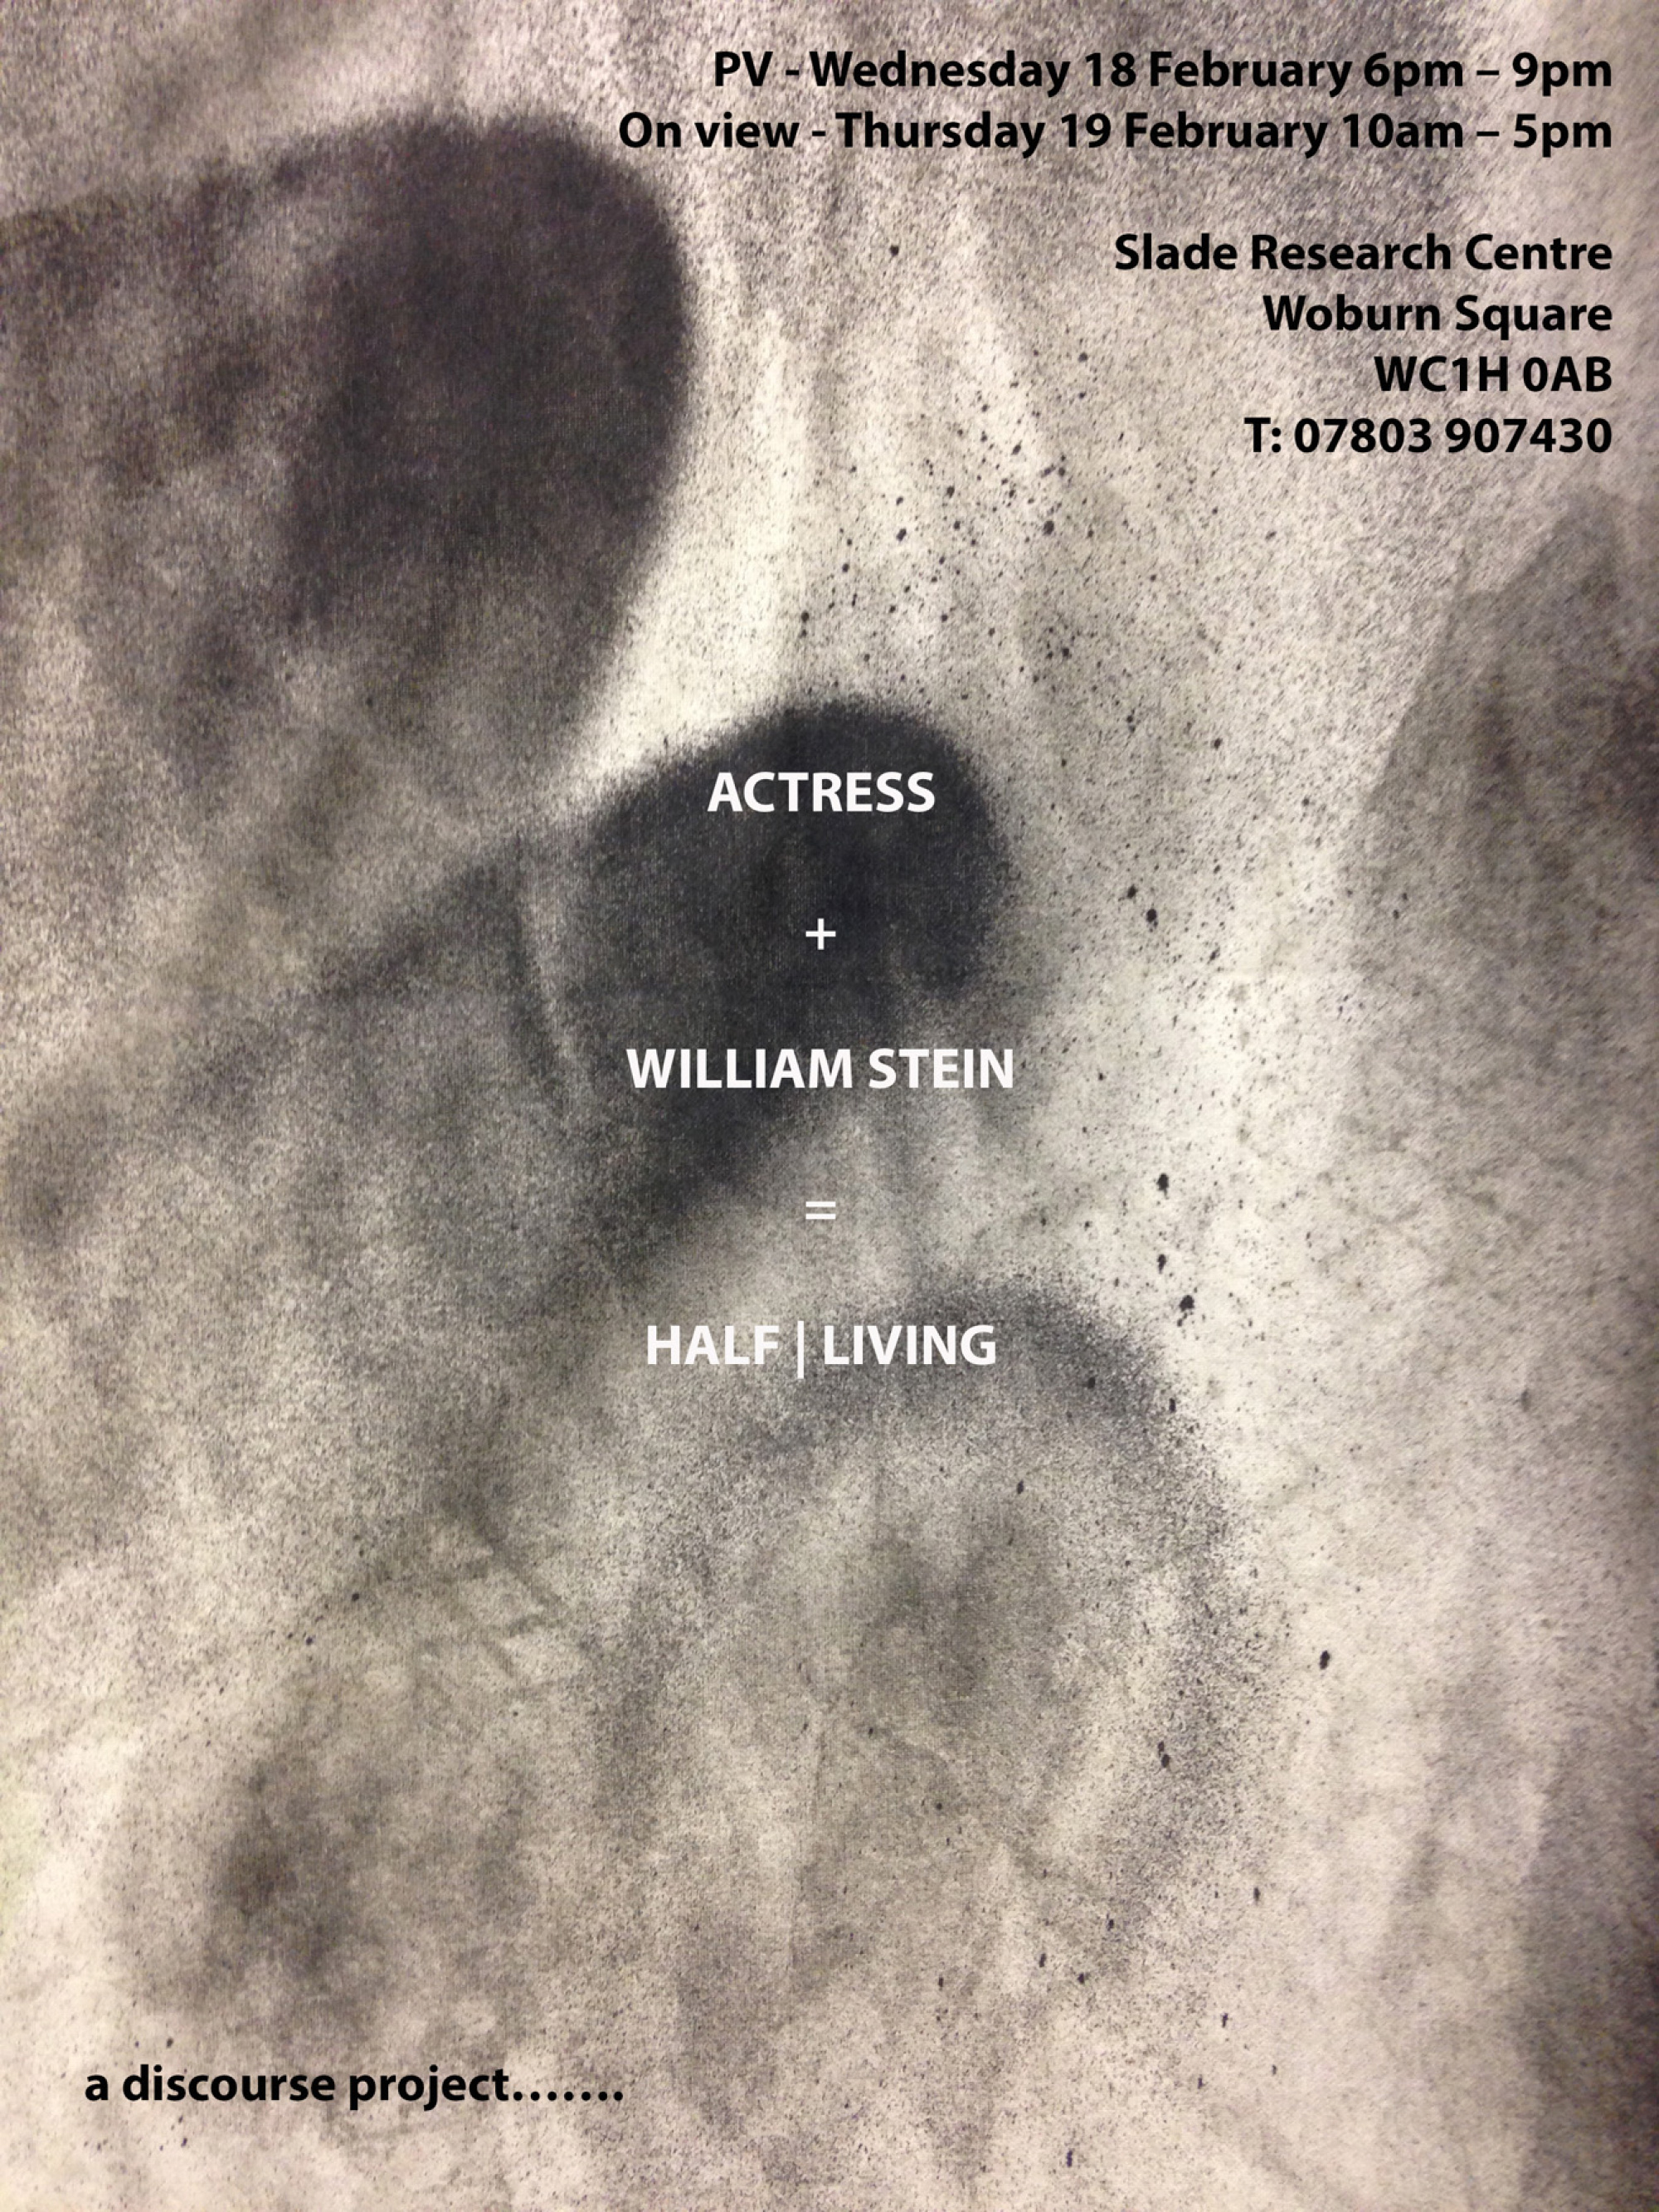 Actress + William Stein = Half Living